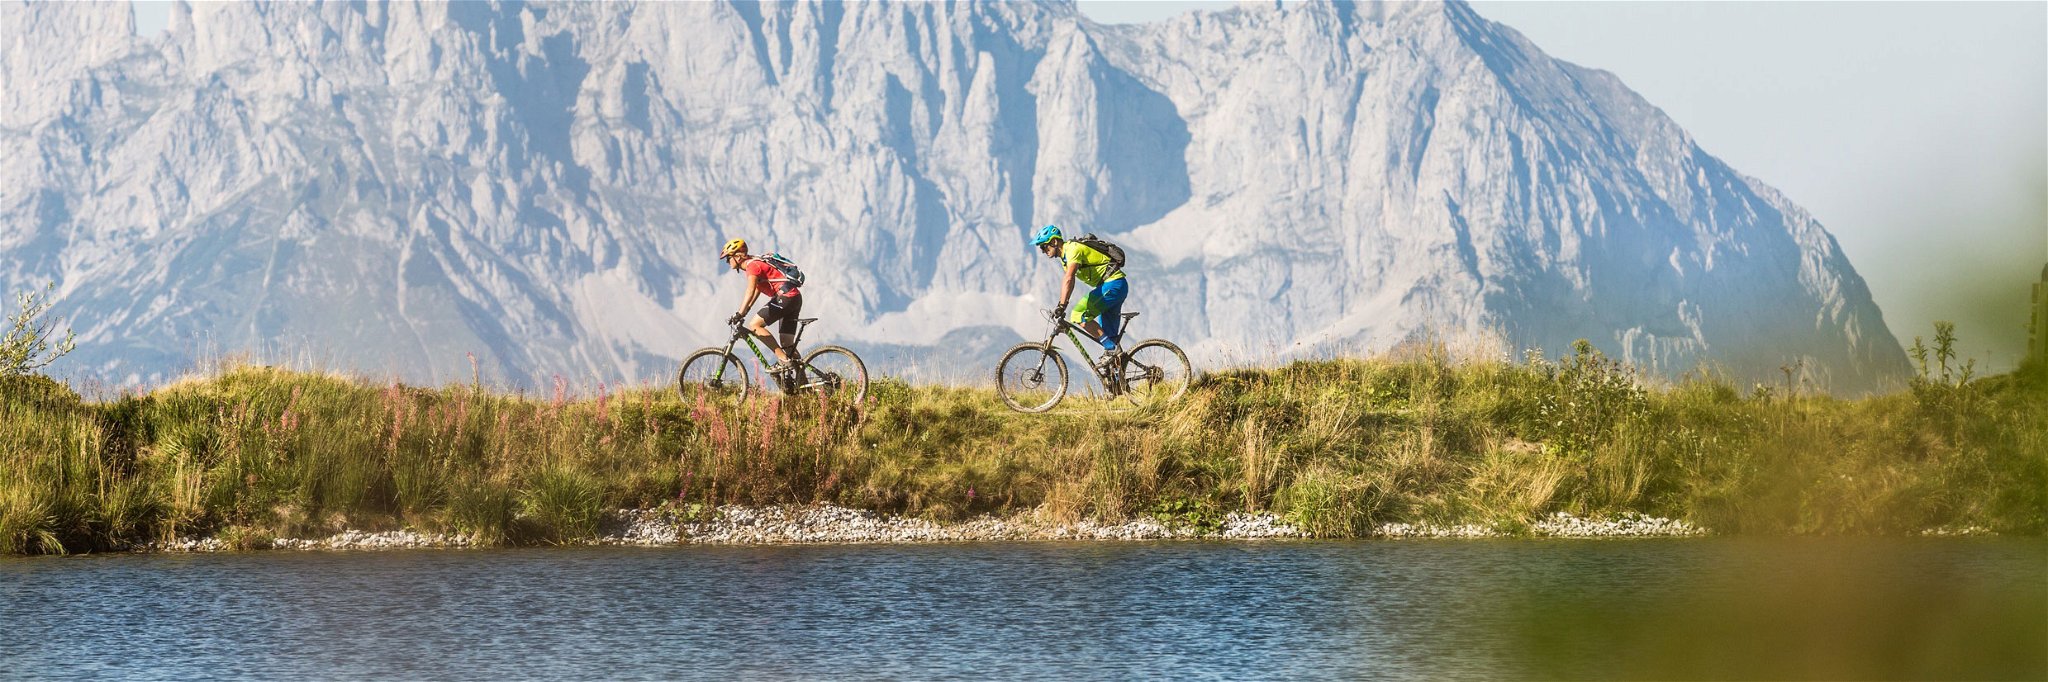 Radfahren am Wasser vor der Bergkulisse: Kombiniert möglich am Fleckalmsee.